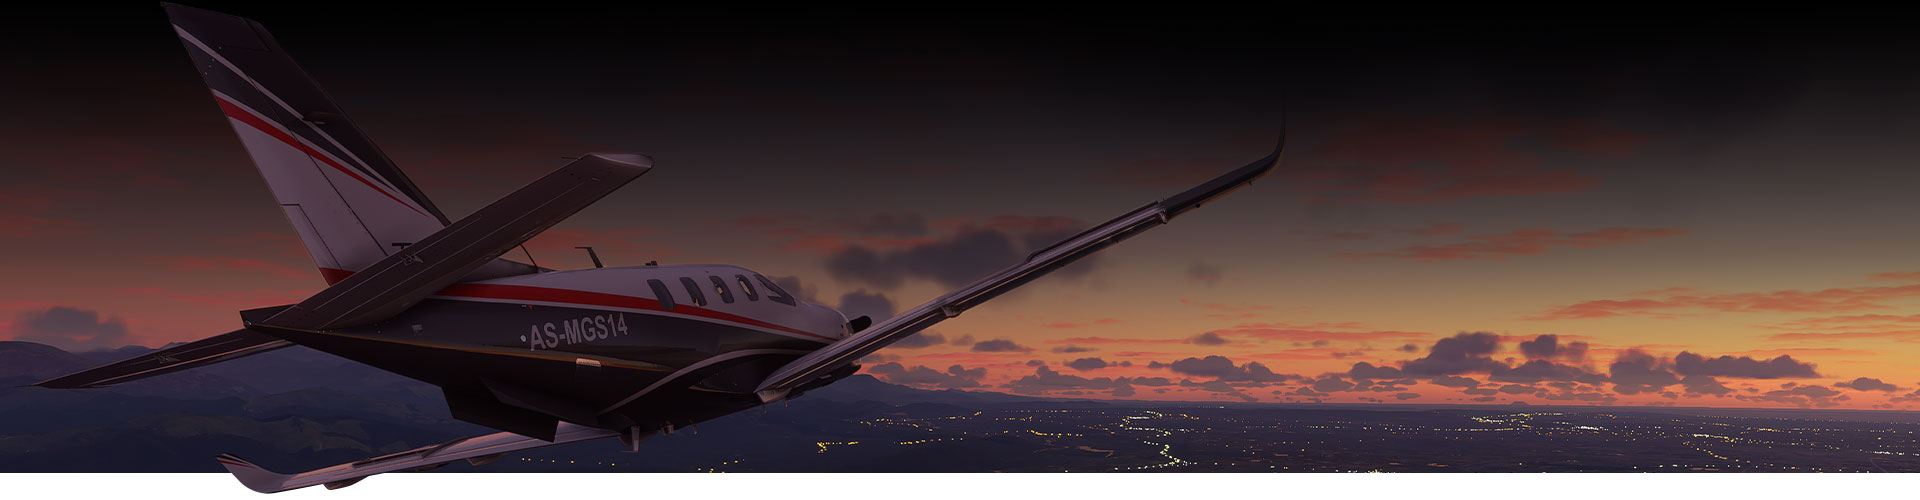 Vliegtuig uit Microsoft Flight Simulator dat tijdens zonsondergang over een stad vliegt